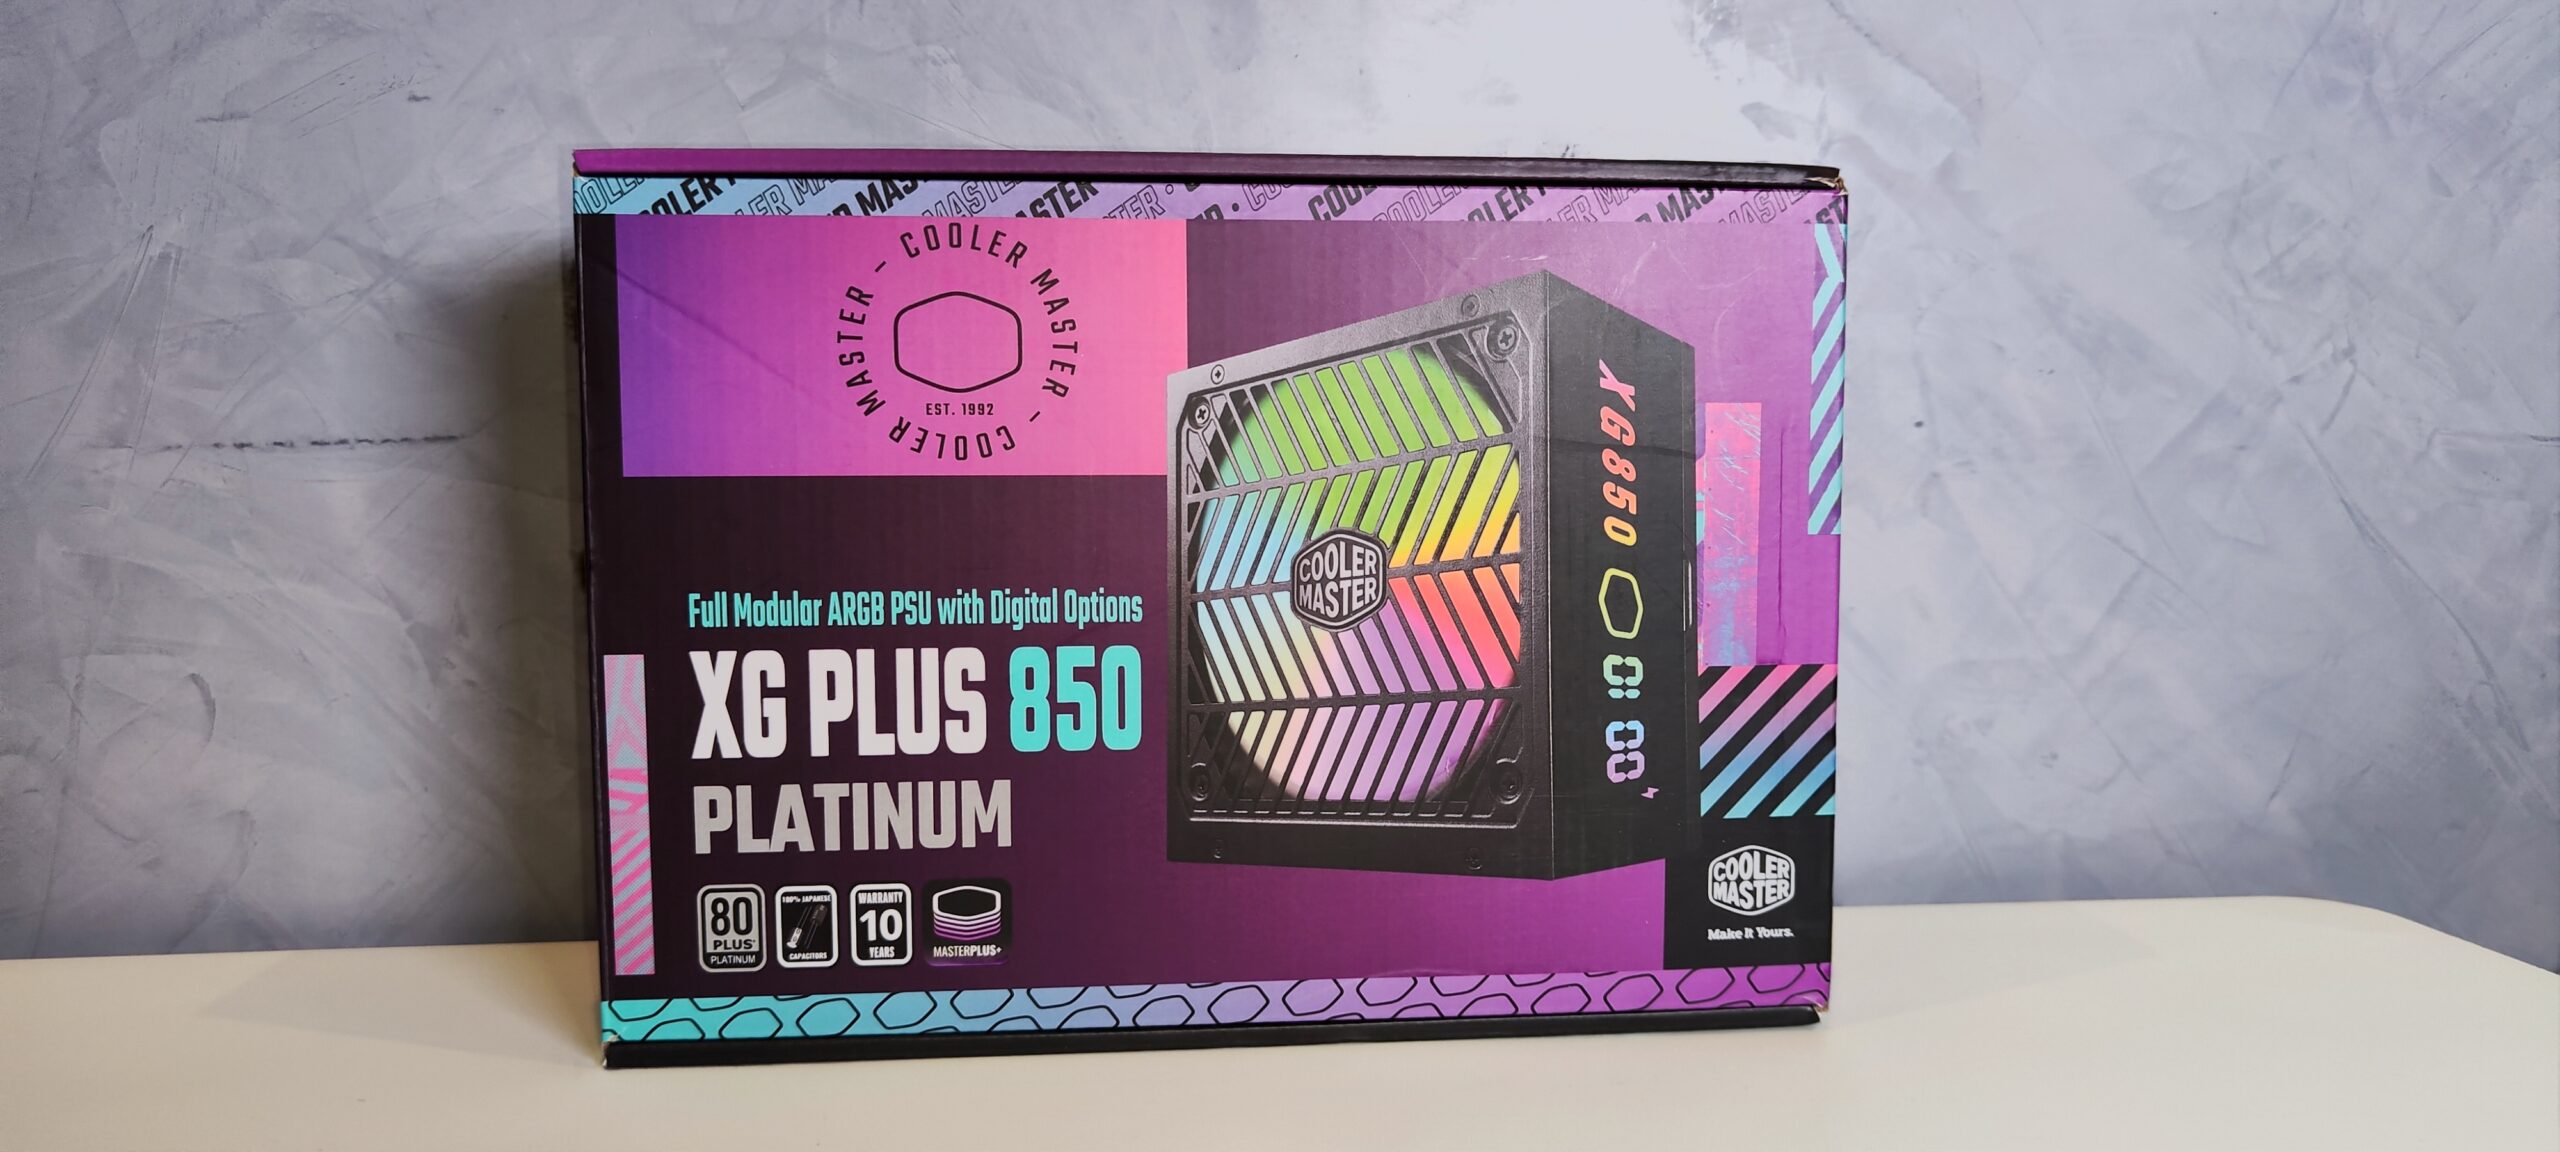 Cooler Master XG Plus 850 Platinum 1 scaled